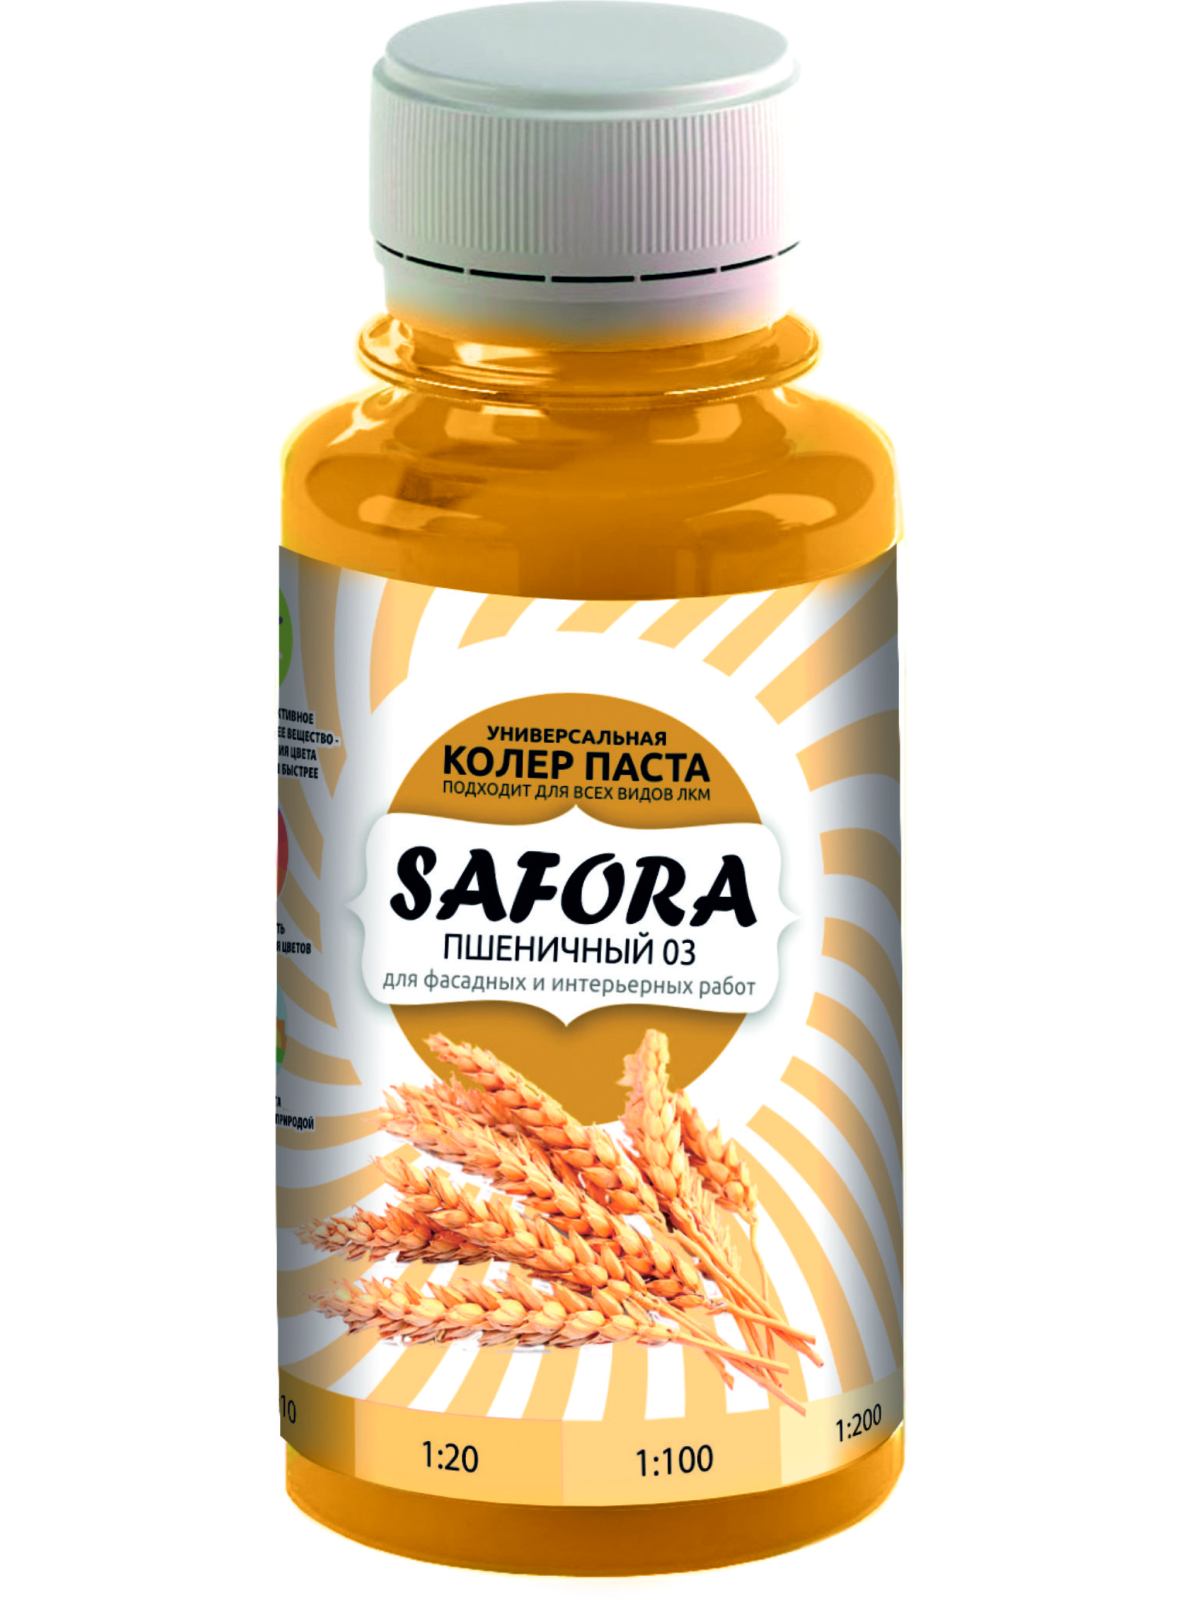 Колеровочная паста SAFORA 03 пшеничный, 100 мл колеровочная паста safora 20 изумруд 100 мл